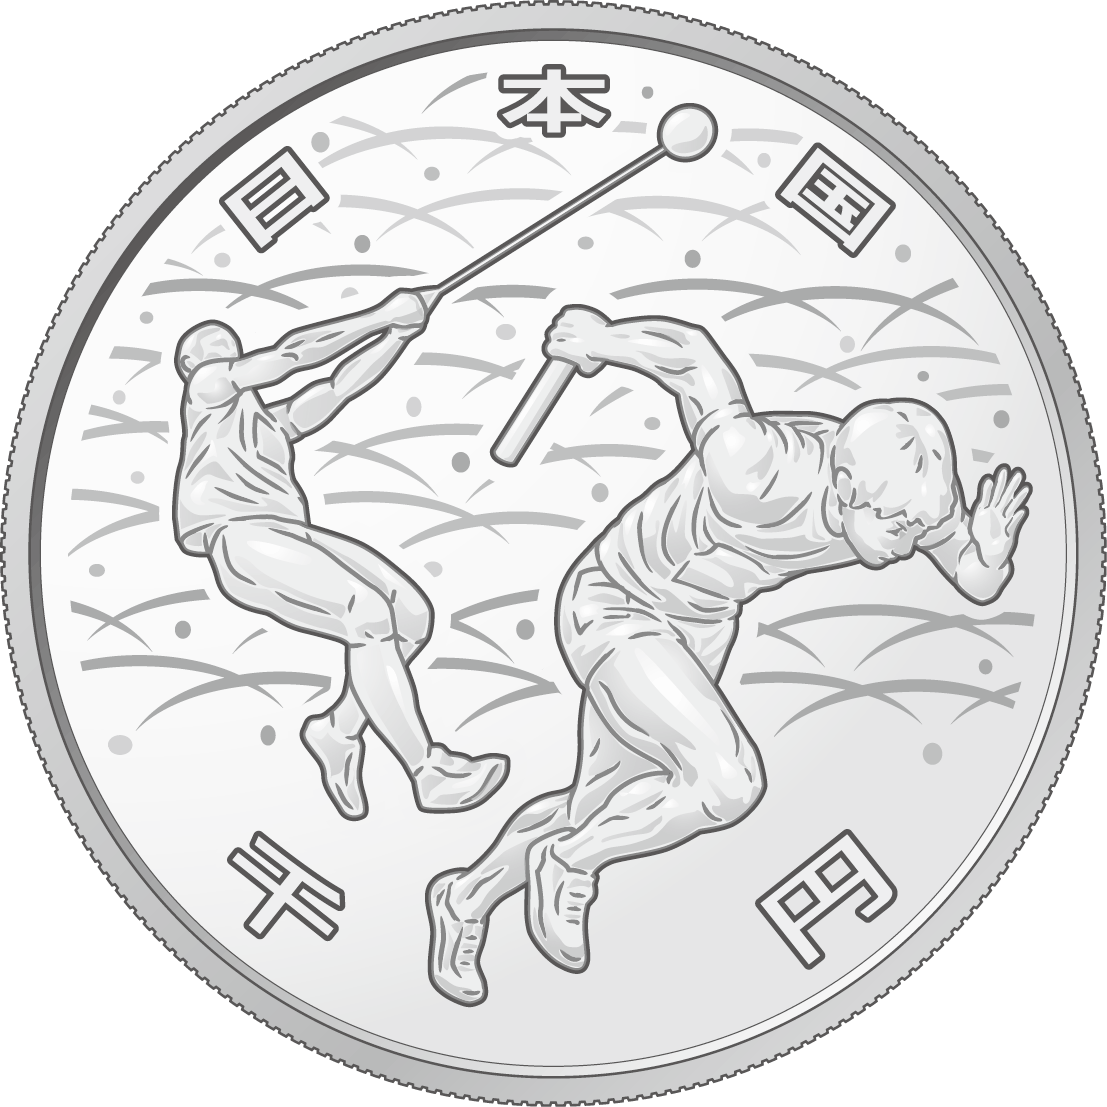 年東京オリンピック パラリンピック競技大会記念貨幣 第二次発行分 を発行します 財務省